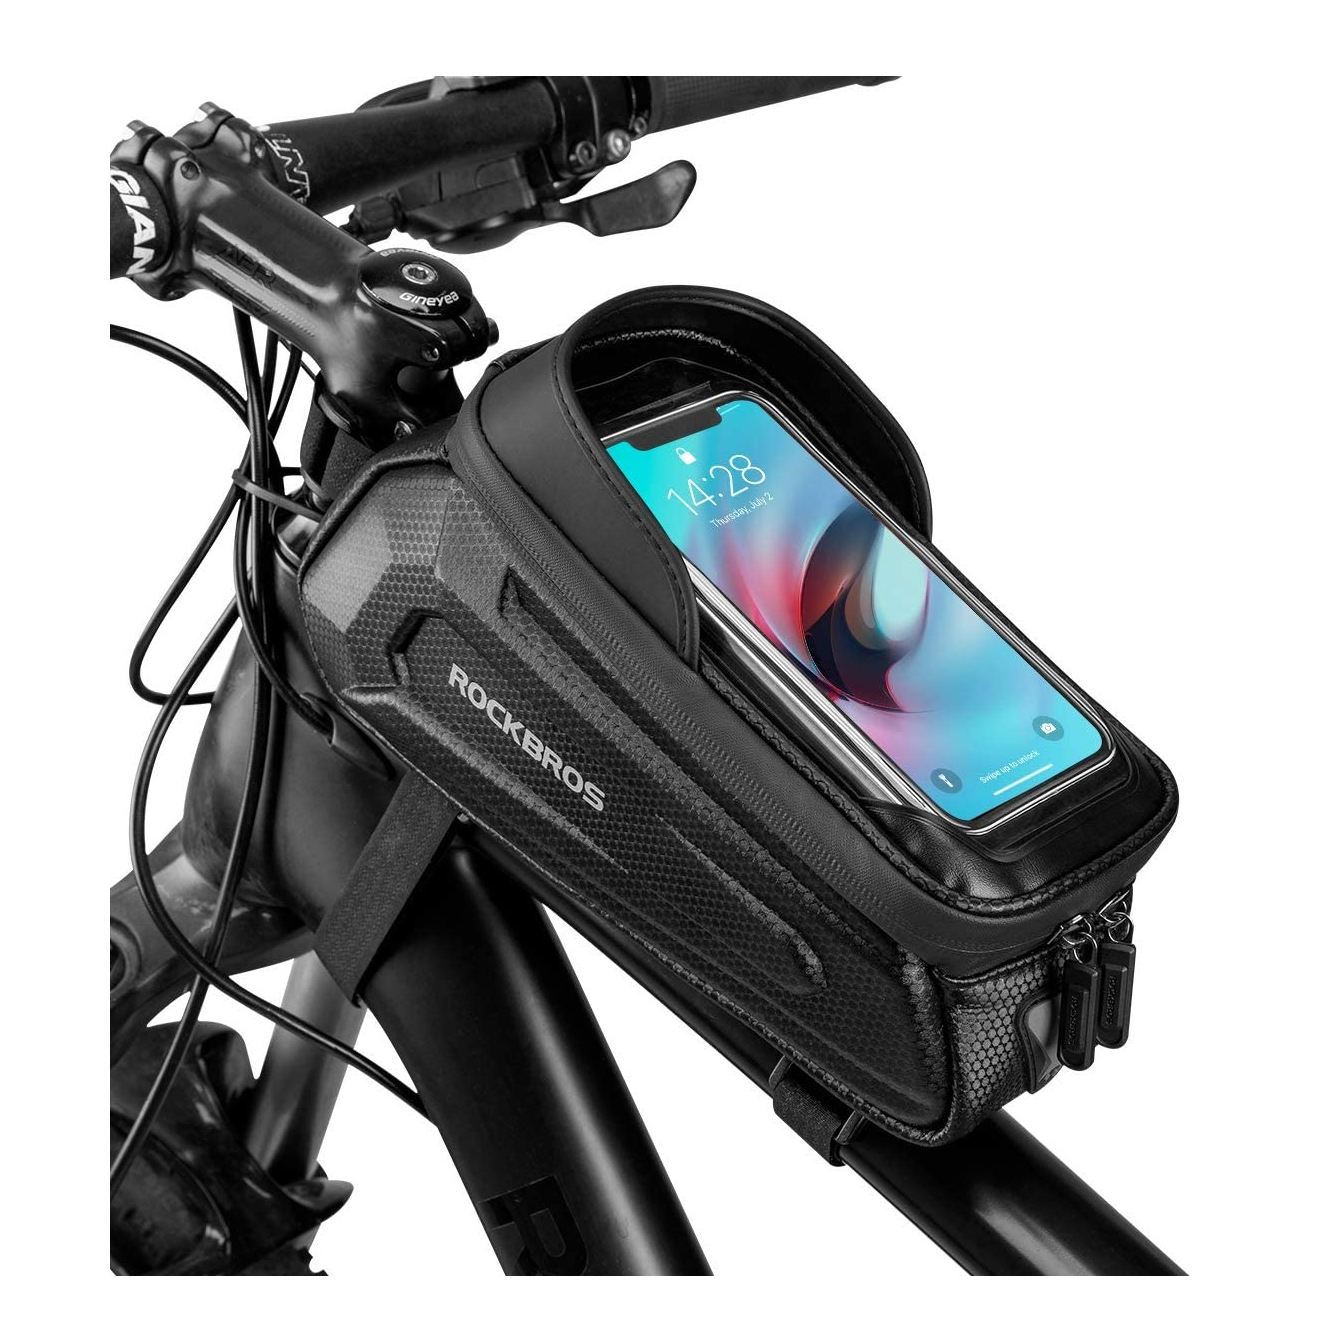 rockbros bike phone bag on a bike frame on a white background